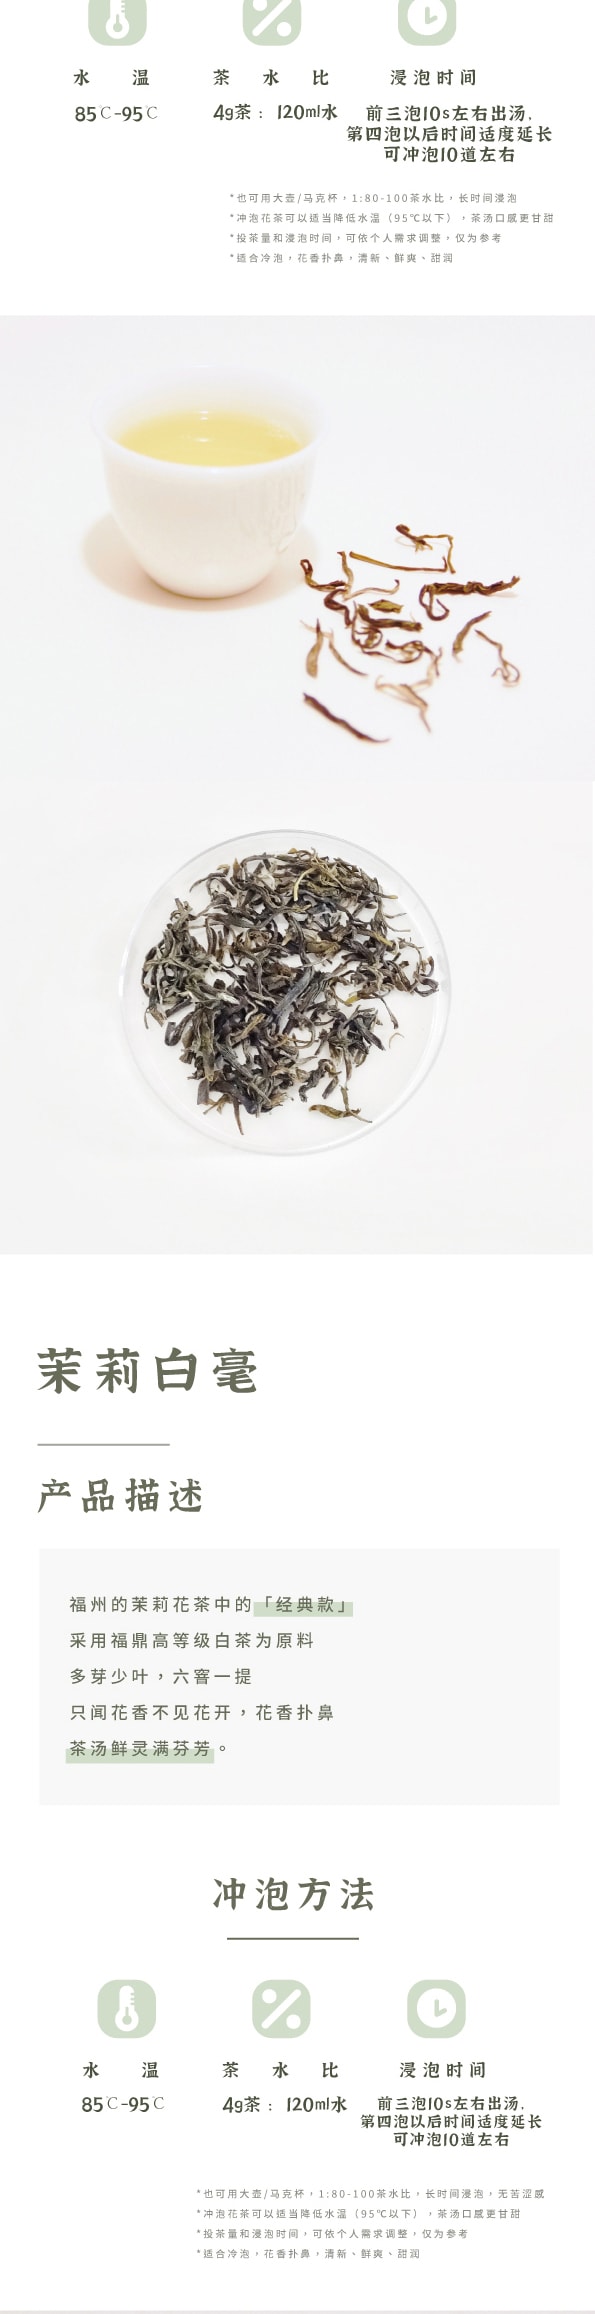 ZhaoTea 茉莉花茶品嚐 三款福州茉莉花茶 茉莉綠茶 茉莉白毫 茉莉針王 茶葉 花茶 20g